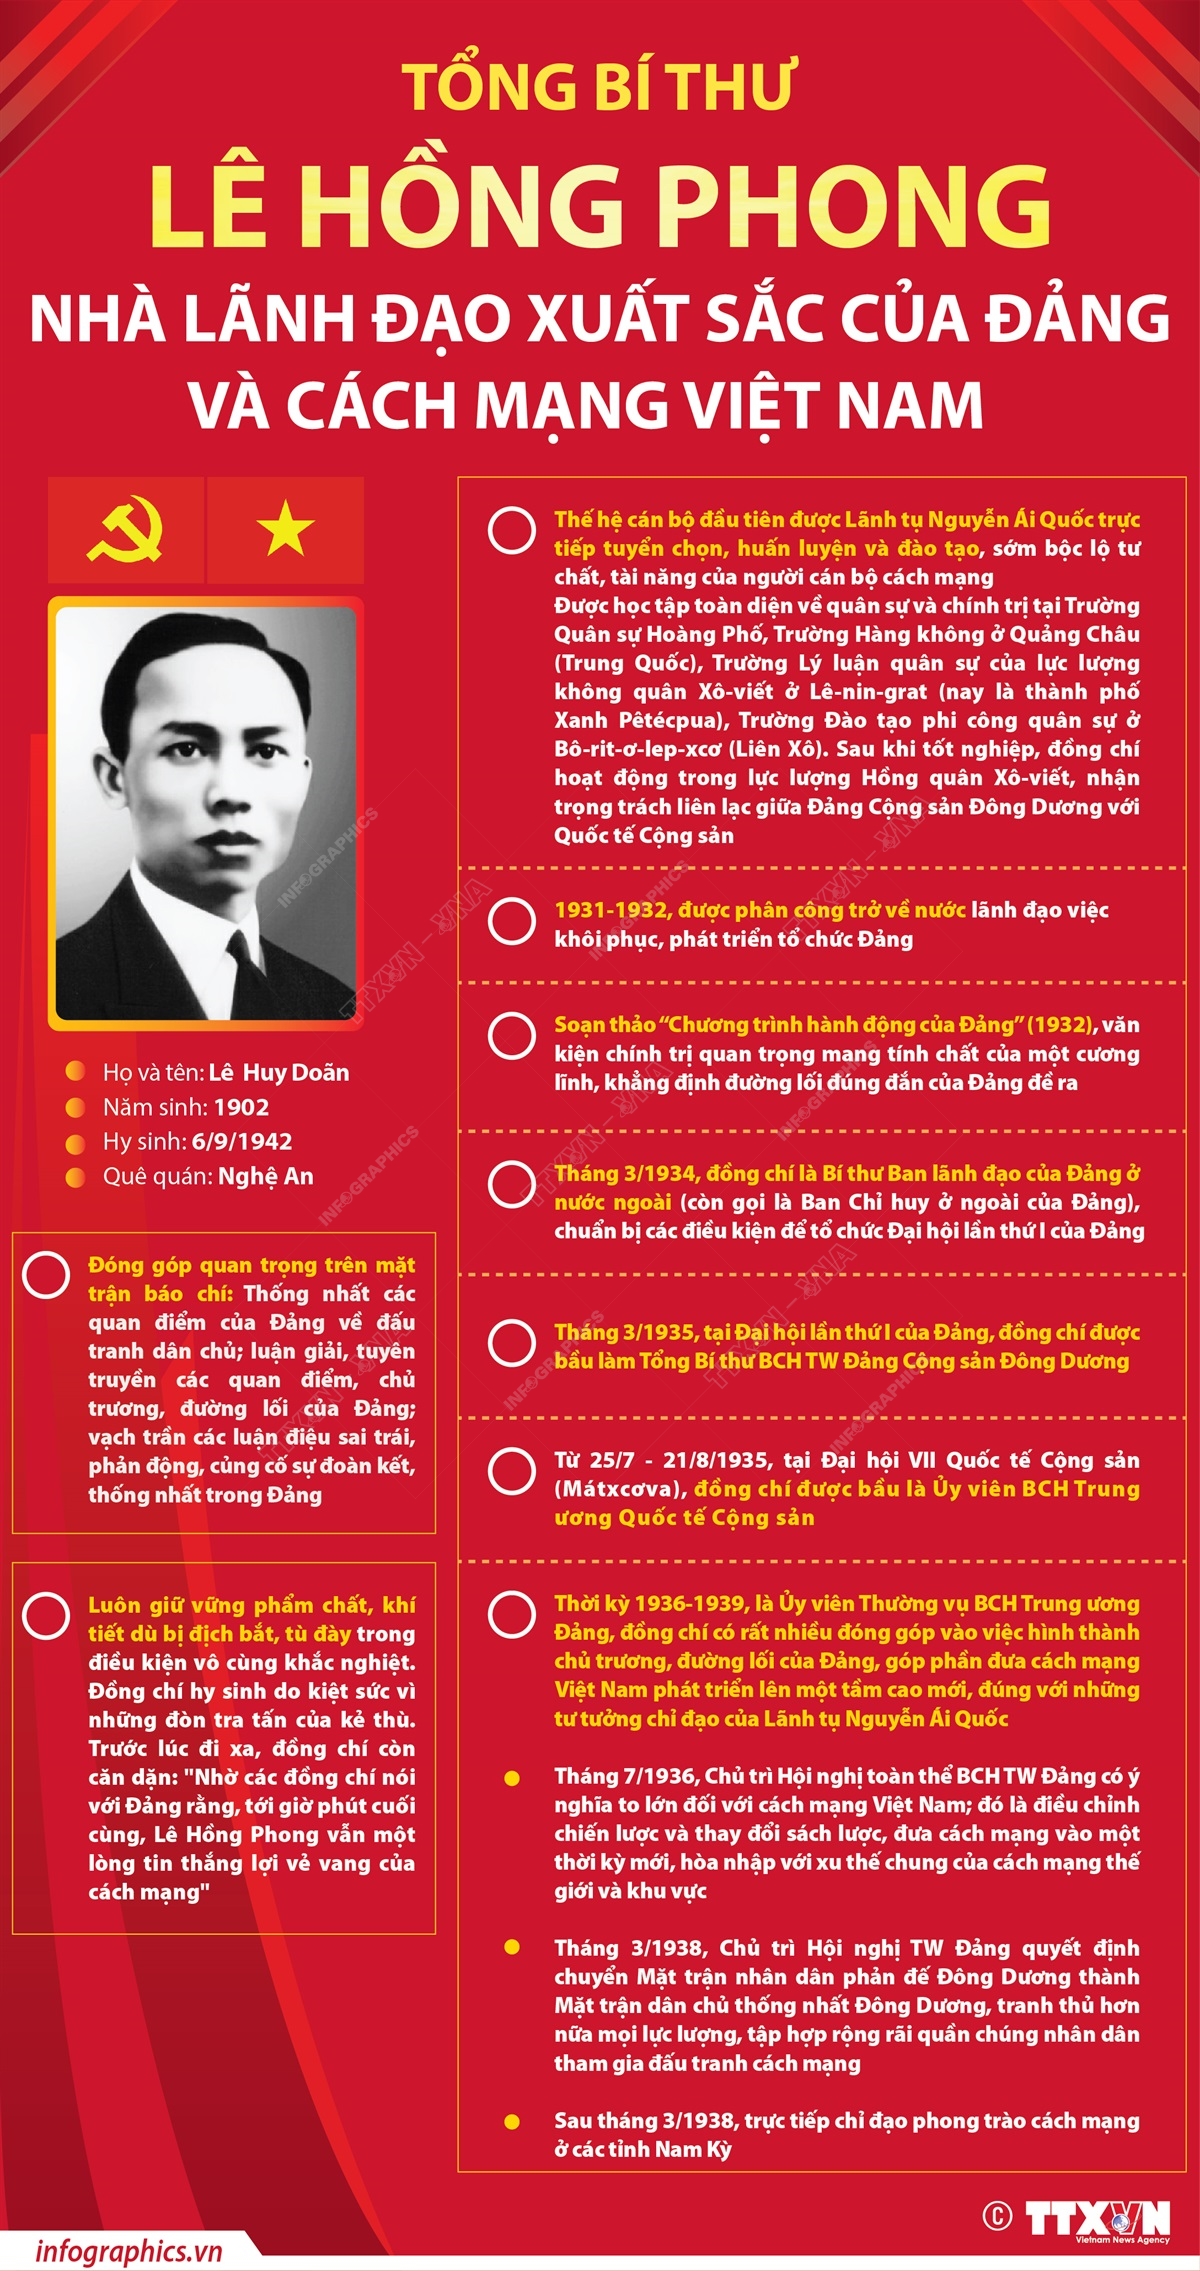 Bạn muốn tìm hiểu thêm về Tổng Bí thư Lê Hồng Phong? Hãy đón xem bức ảnh này để khám phá thông tin thú vị về người đứng đầu Đảng Cộng sản Việt Nam.